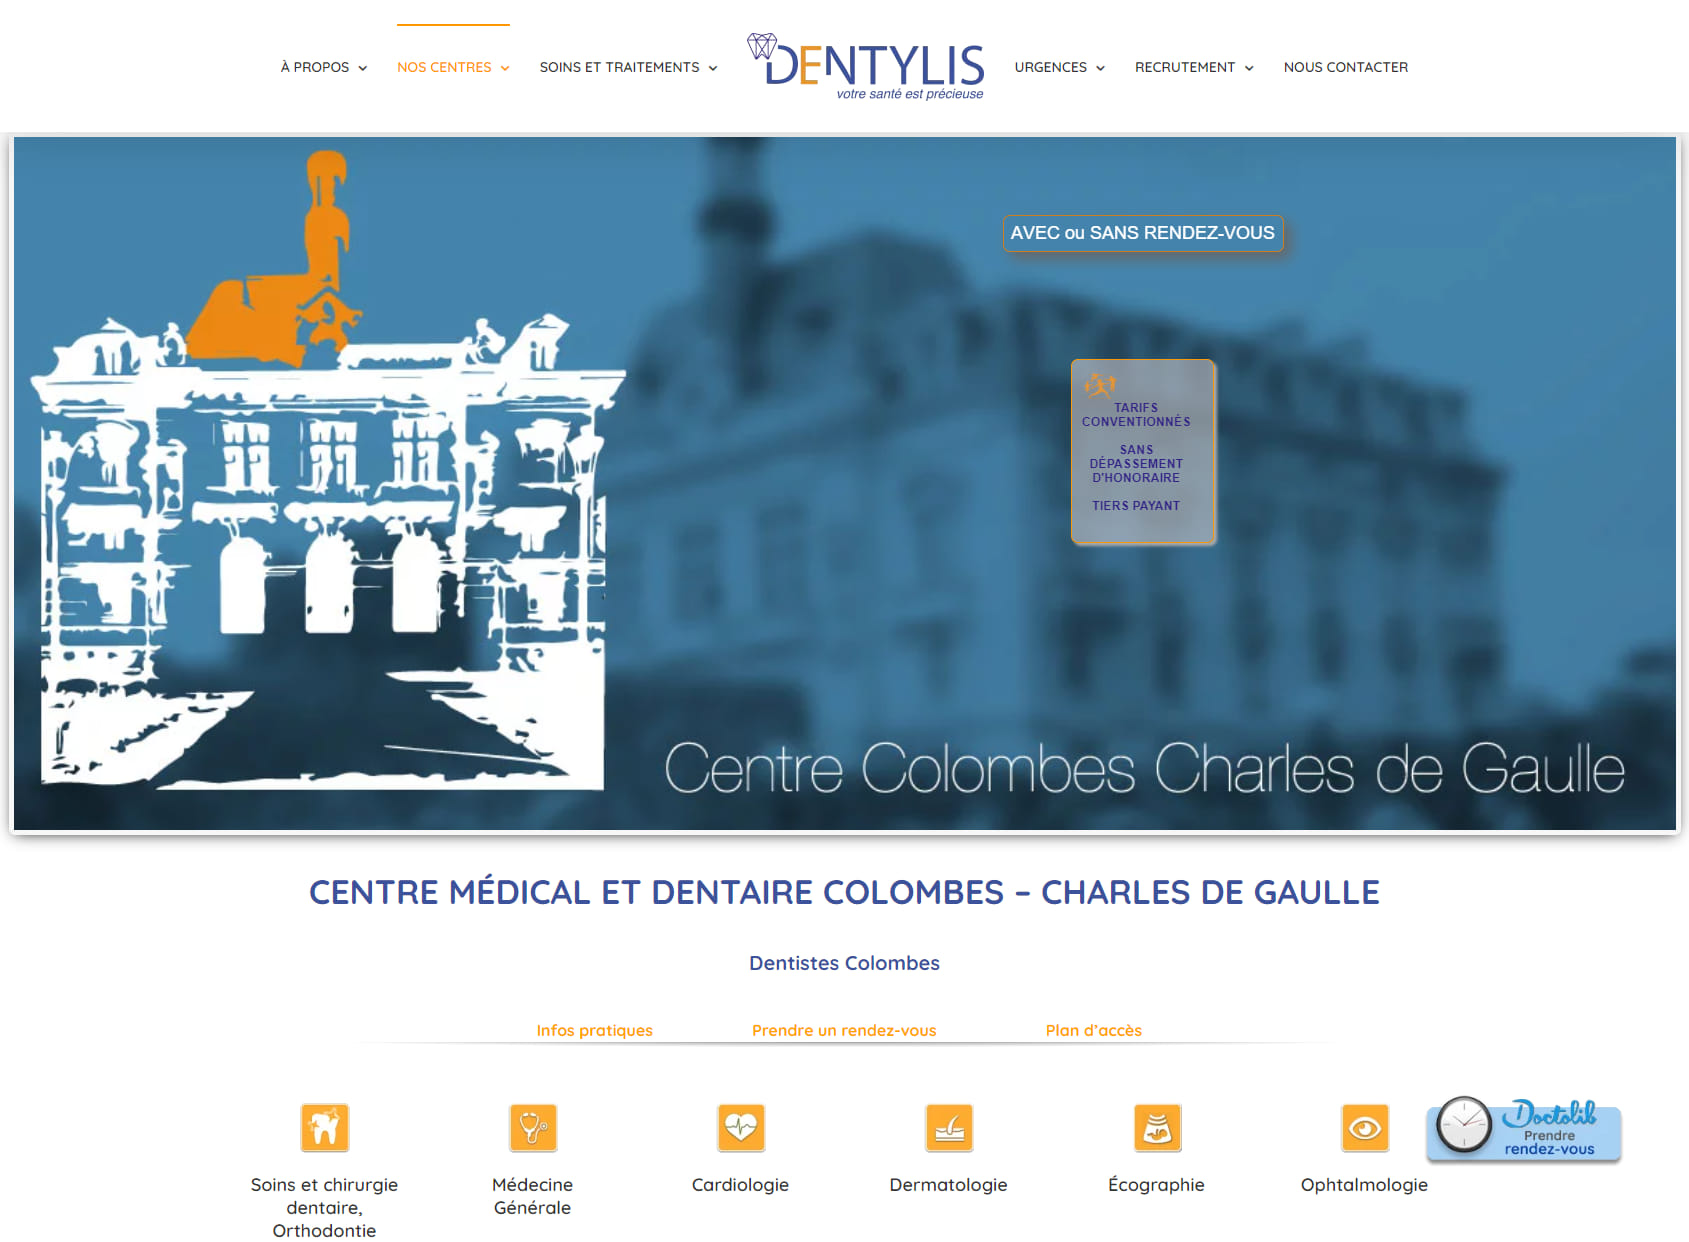 Centre Médical et Dentaire Colombes Ch. de Gaulle - Dentylis